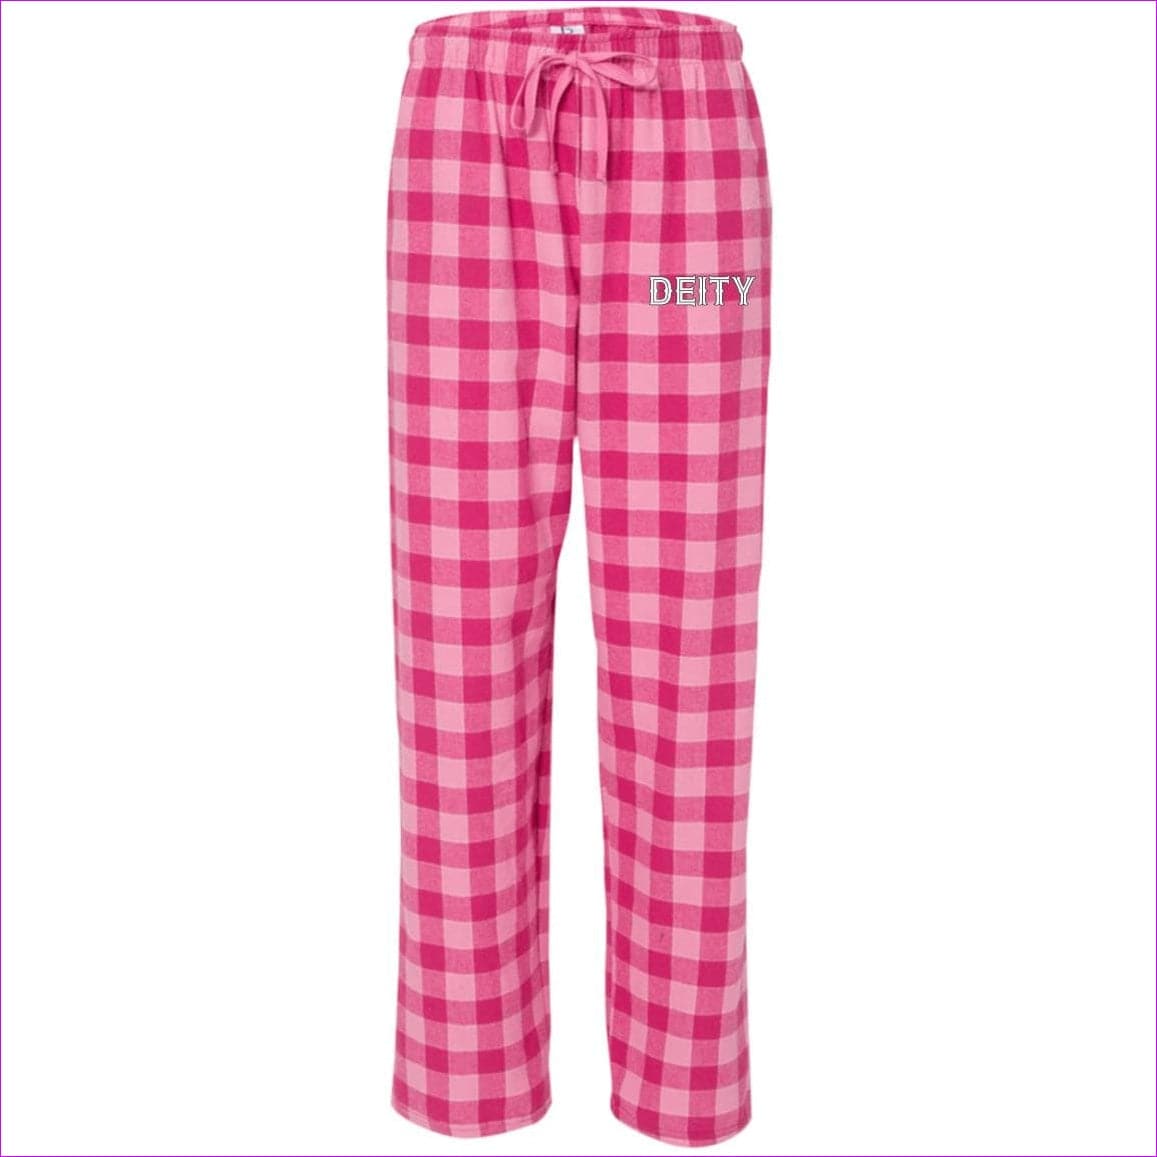 Bubblegum Deity Flannel Pants - unisex pajamas Pants at TFC&H Co.